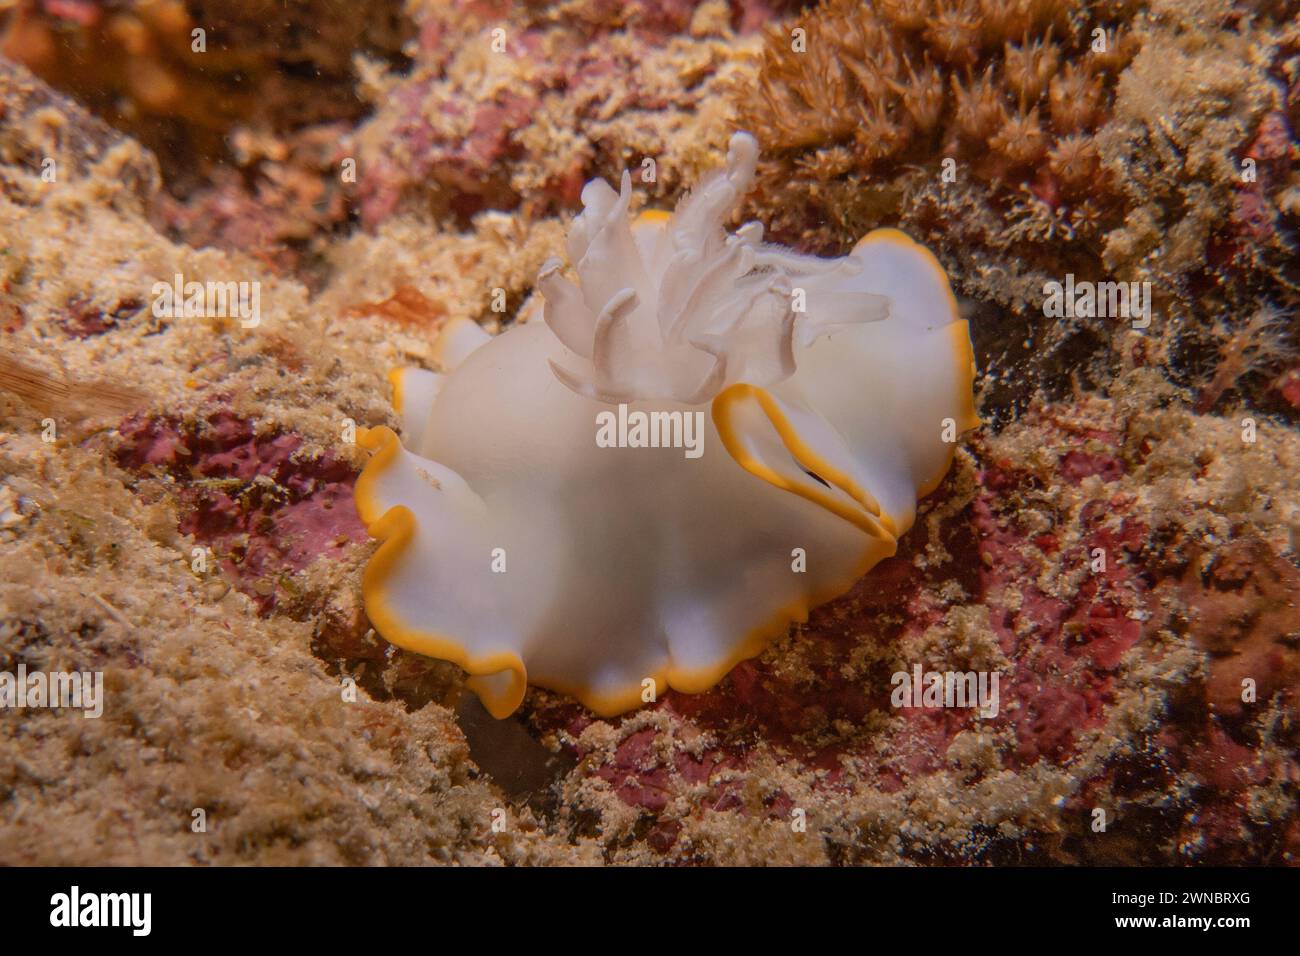 Sea slug in the Sea of the Philippines Stock Photo